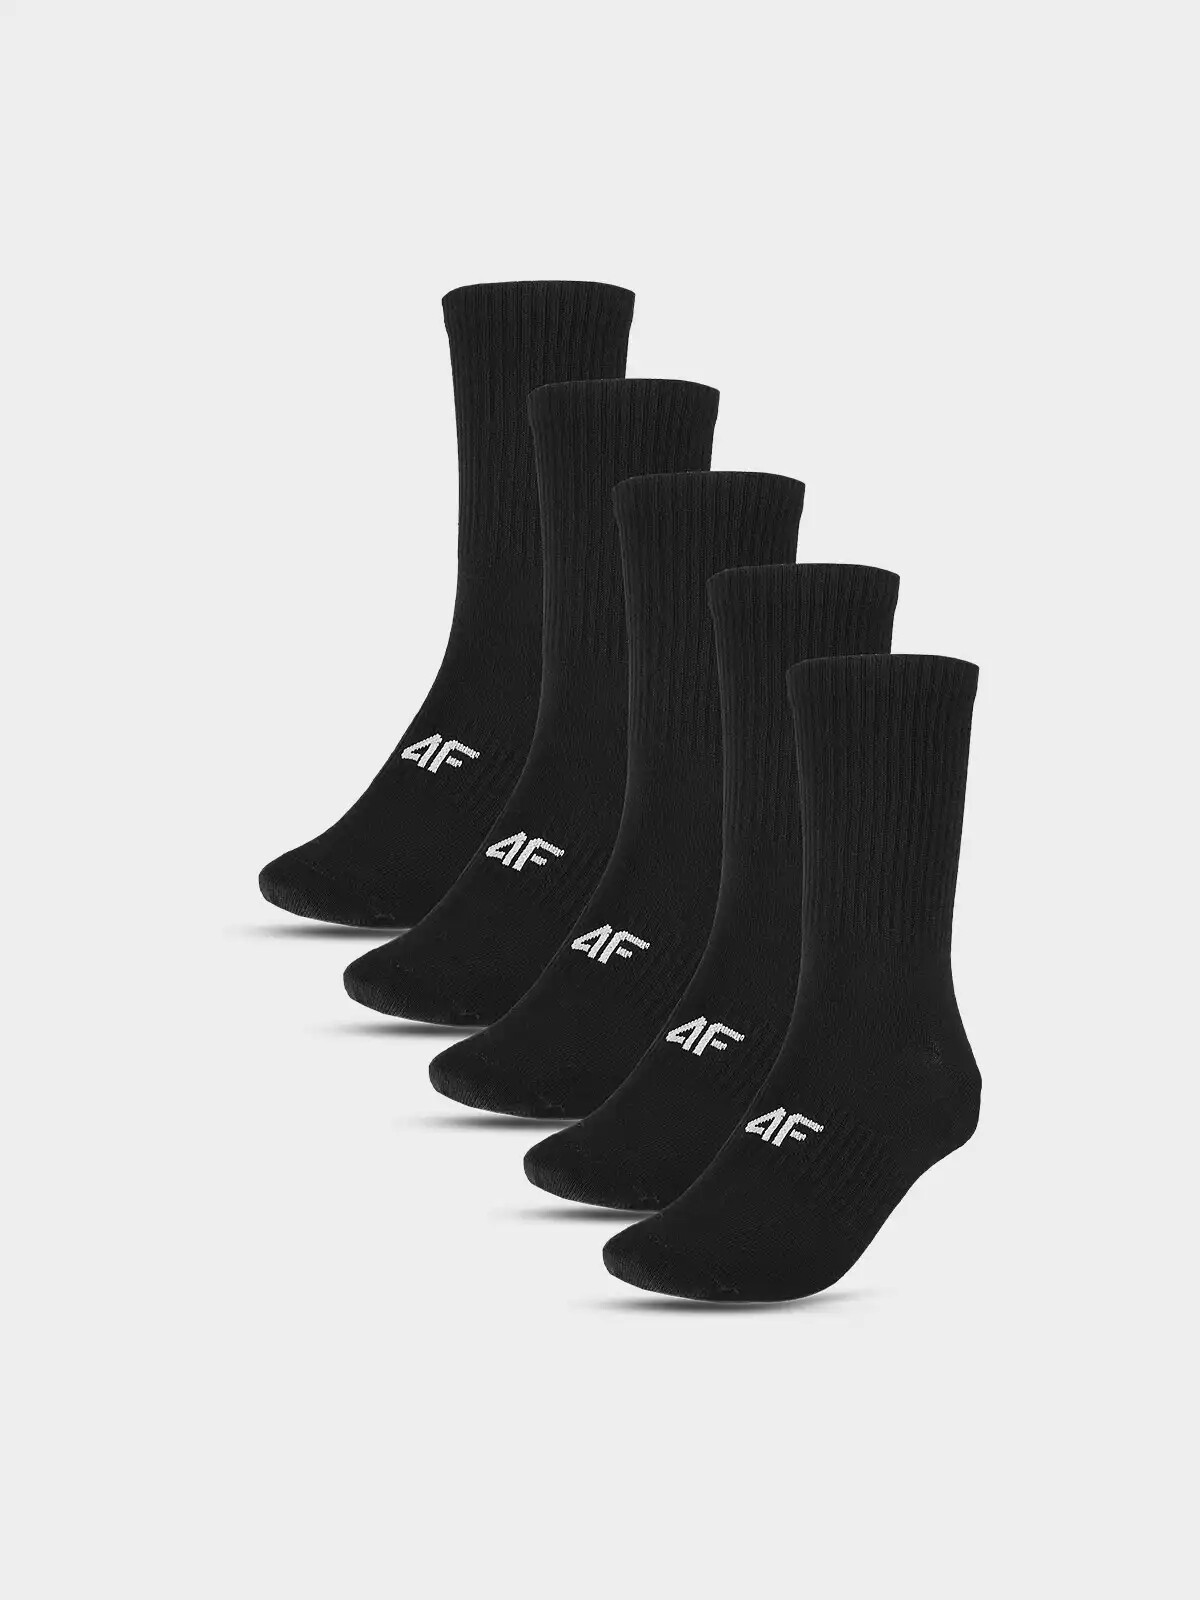 Men's Socks (5pack) 4F - Black